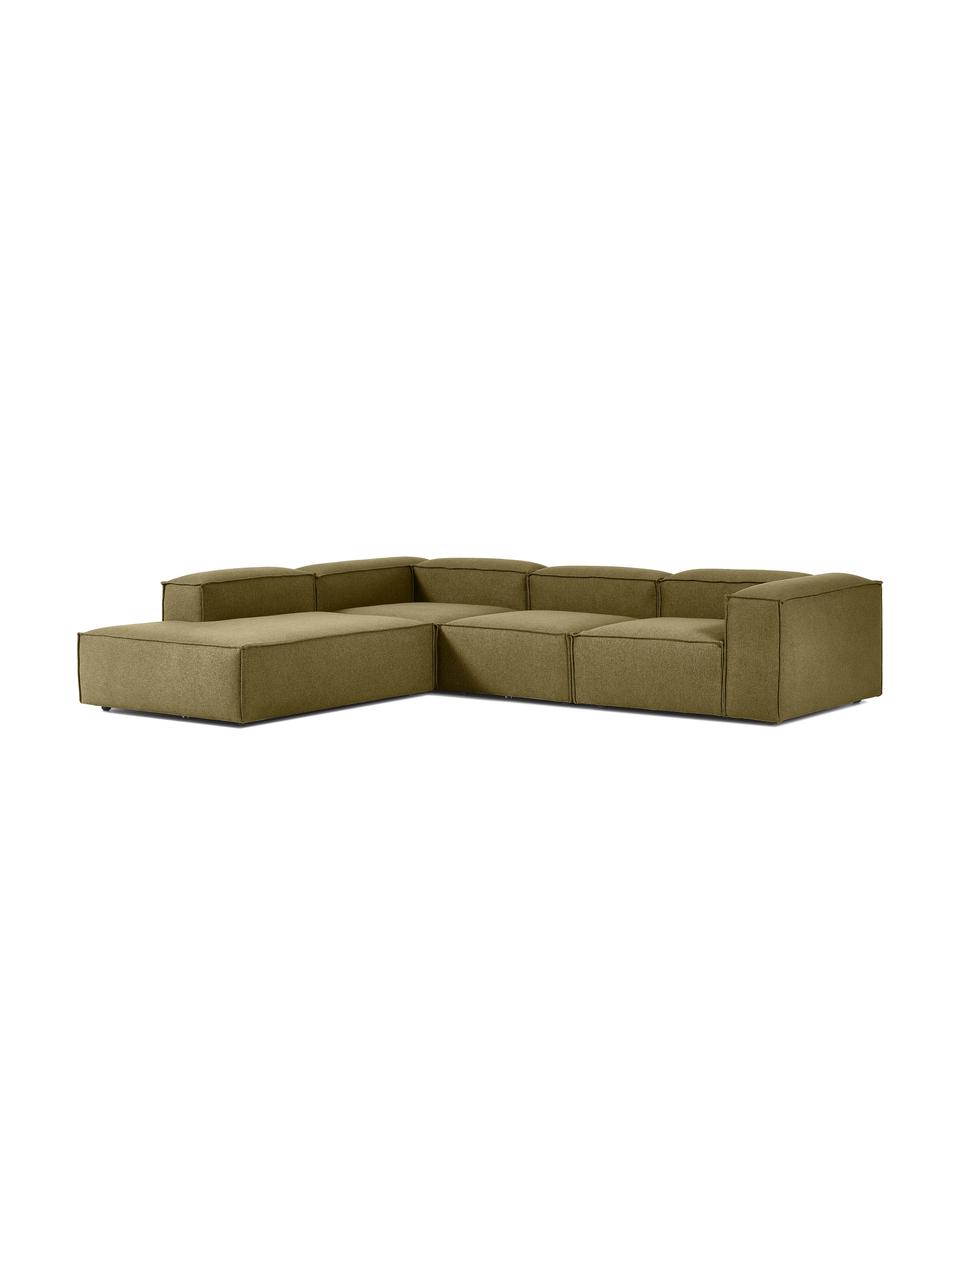 Narożna sofa modułowa XL Lennon, Tapicerka: 100% poliester Dzięki tka, Stelaż: lite drewno, sklejka, Nogi: tworzywo sztuczne, Zielona tkanina, S 329 x W 68 cm, prawostronna